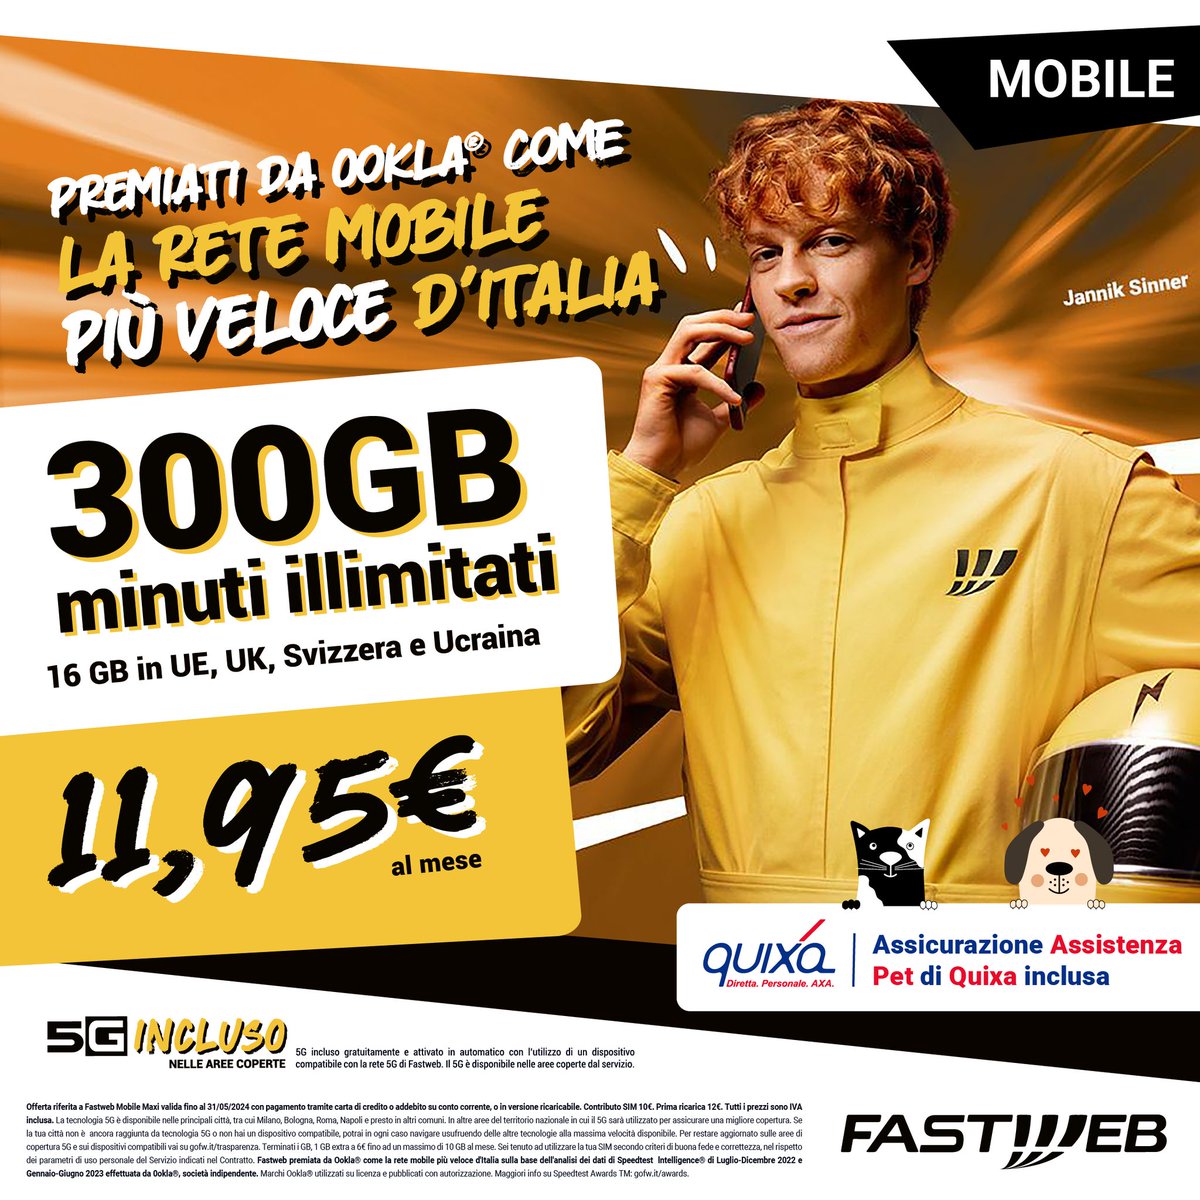 300GB, minuti illimitati, 16GB in roaming per navigare in Europa UK, Svizzera e Ucraina e tecnologia 5G: con Fastweb Mobile Maxi hai tutto questo a soli 11,95€ al mese!E come se non bastasse, inclusa nella tua offerta hai l'assicurazione Assistenza Pet con Quixa!Passa in negozio